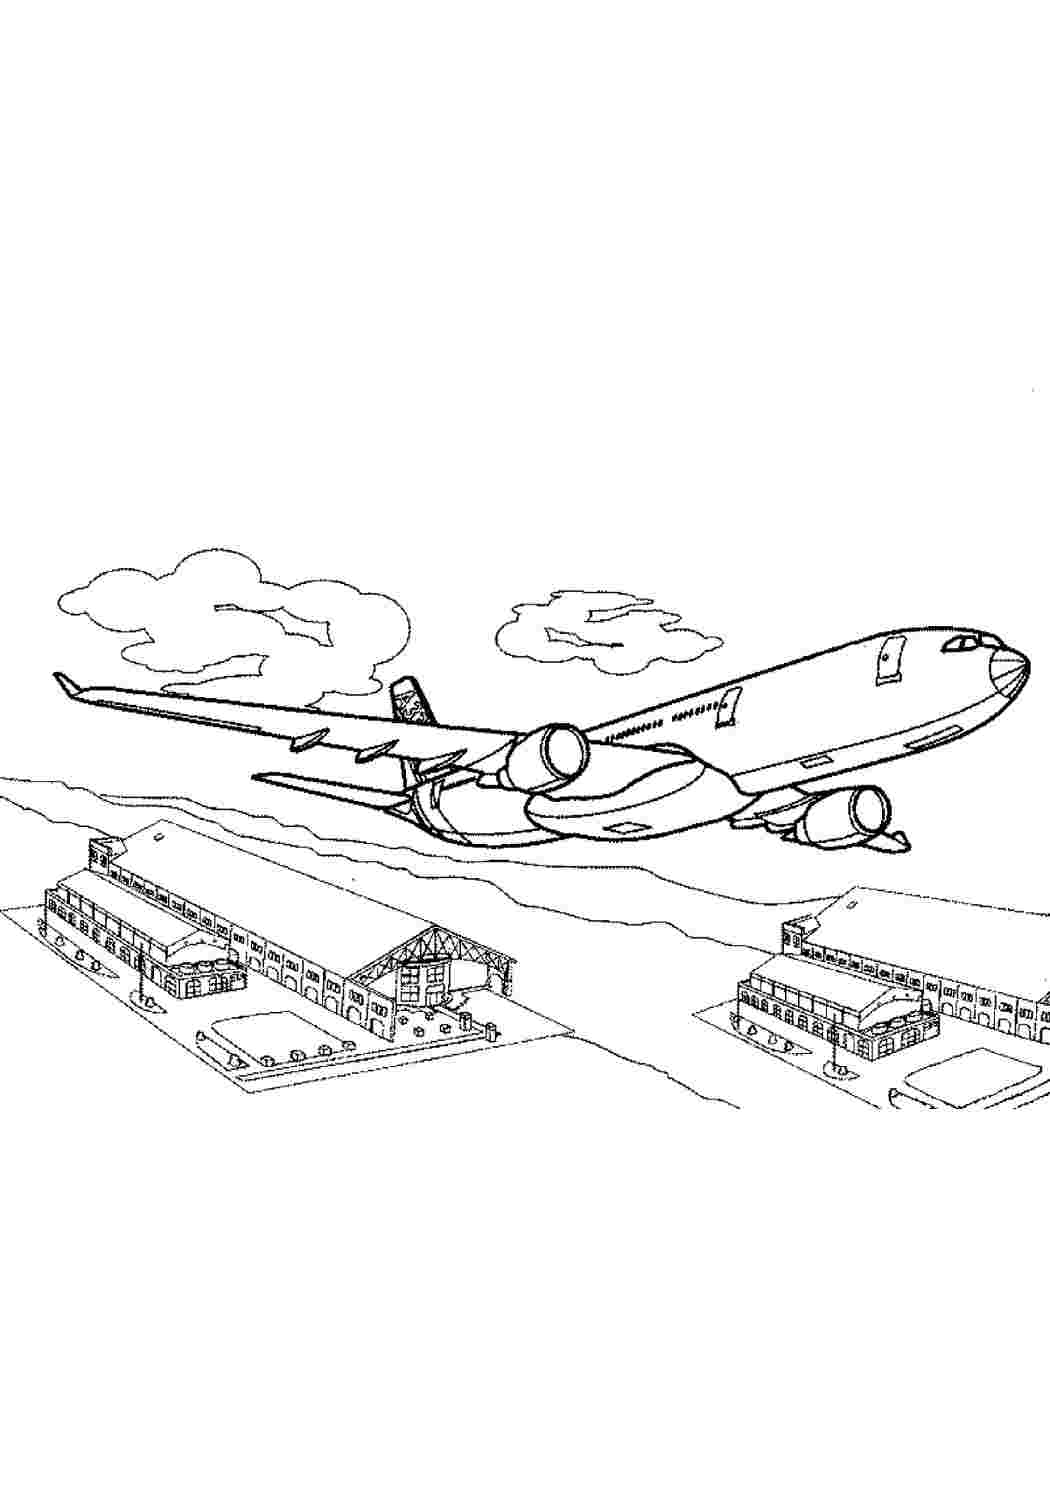 «Аэрофлот» меняет окрас. Как будут выглядеть новые самолеты